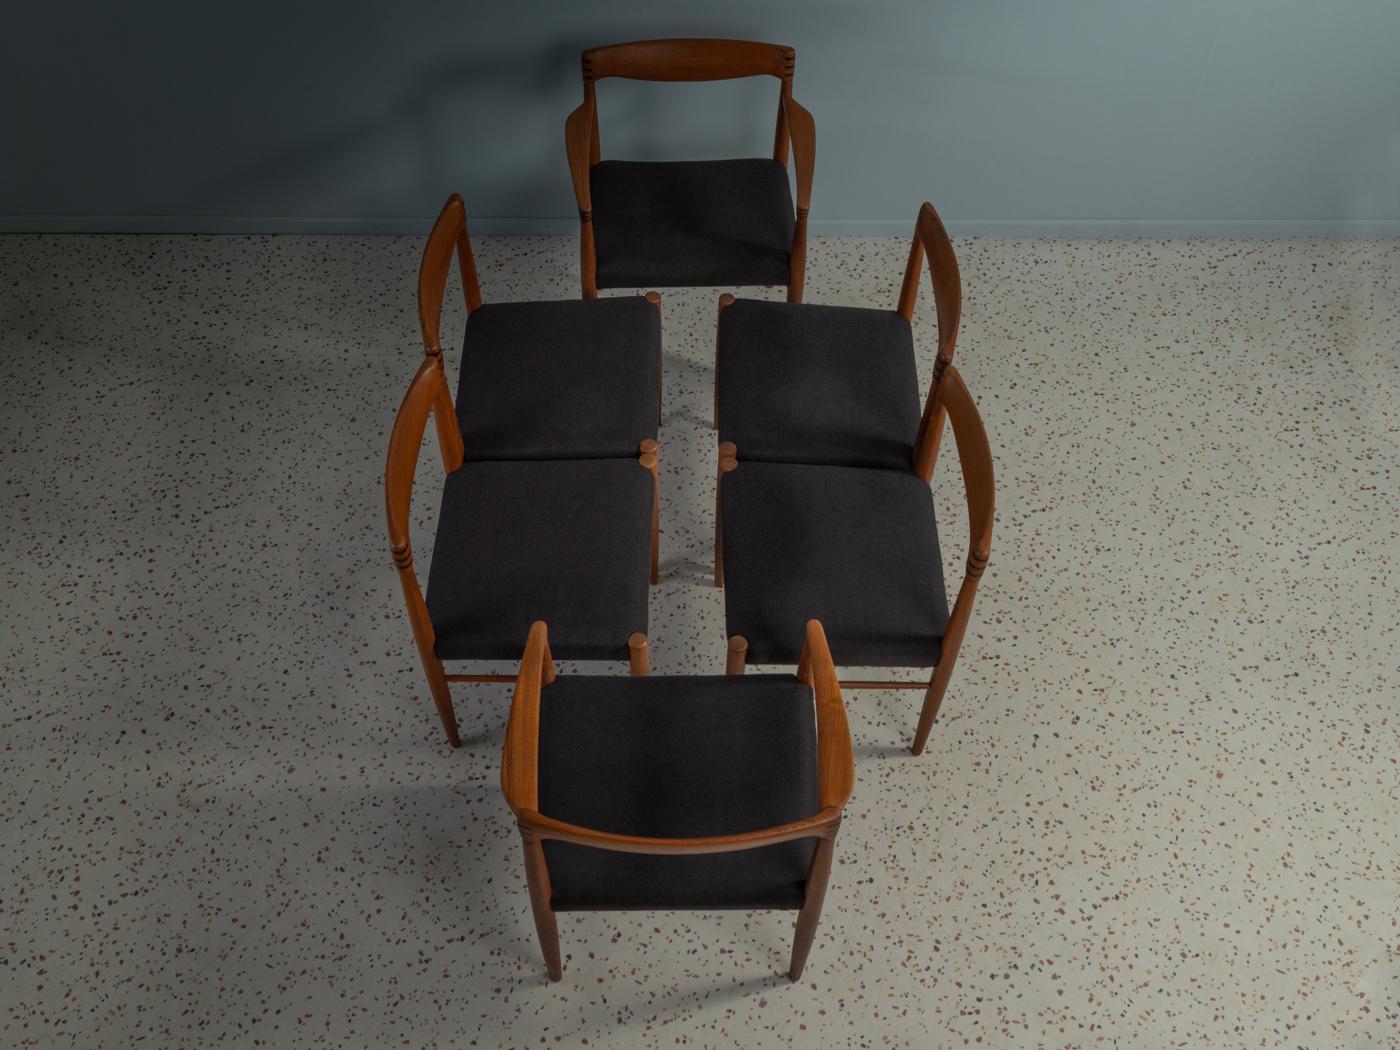 Chaises classiques des années 1960 par H.W. Klein pour Bramin. Cadre en teck massif avec dossier et accoudoirs à tenons et mortaises. Les chaises ont été retapissées et recouvertes d'un tissu de haute qualité de couleur noire. L'offre comprend 6